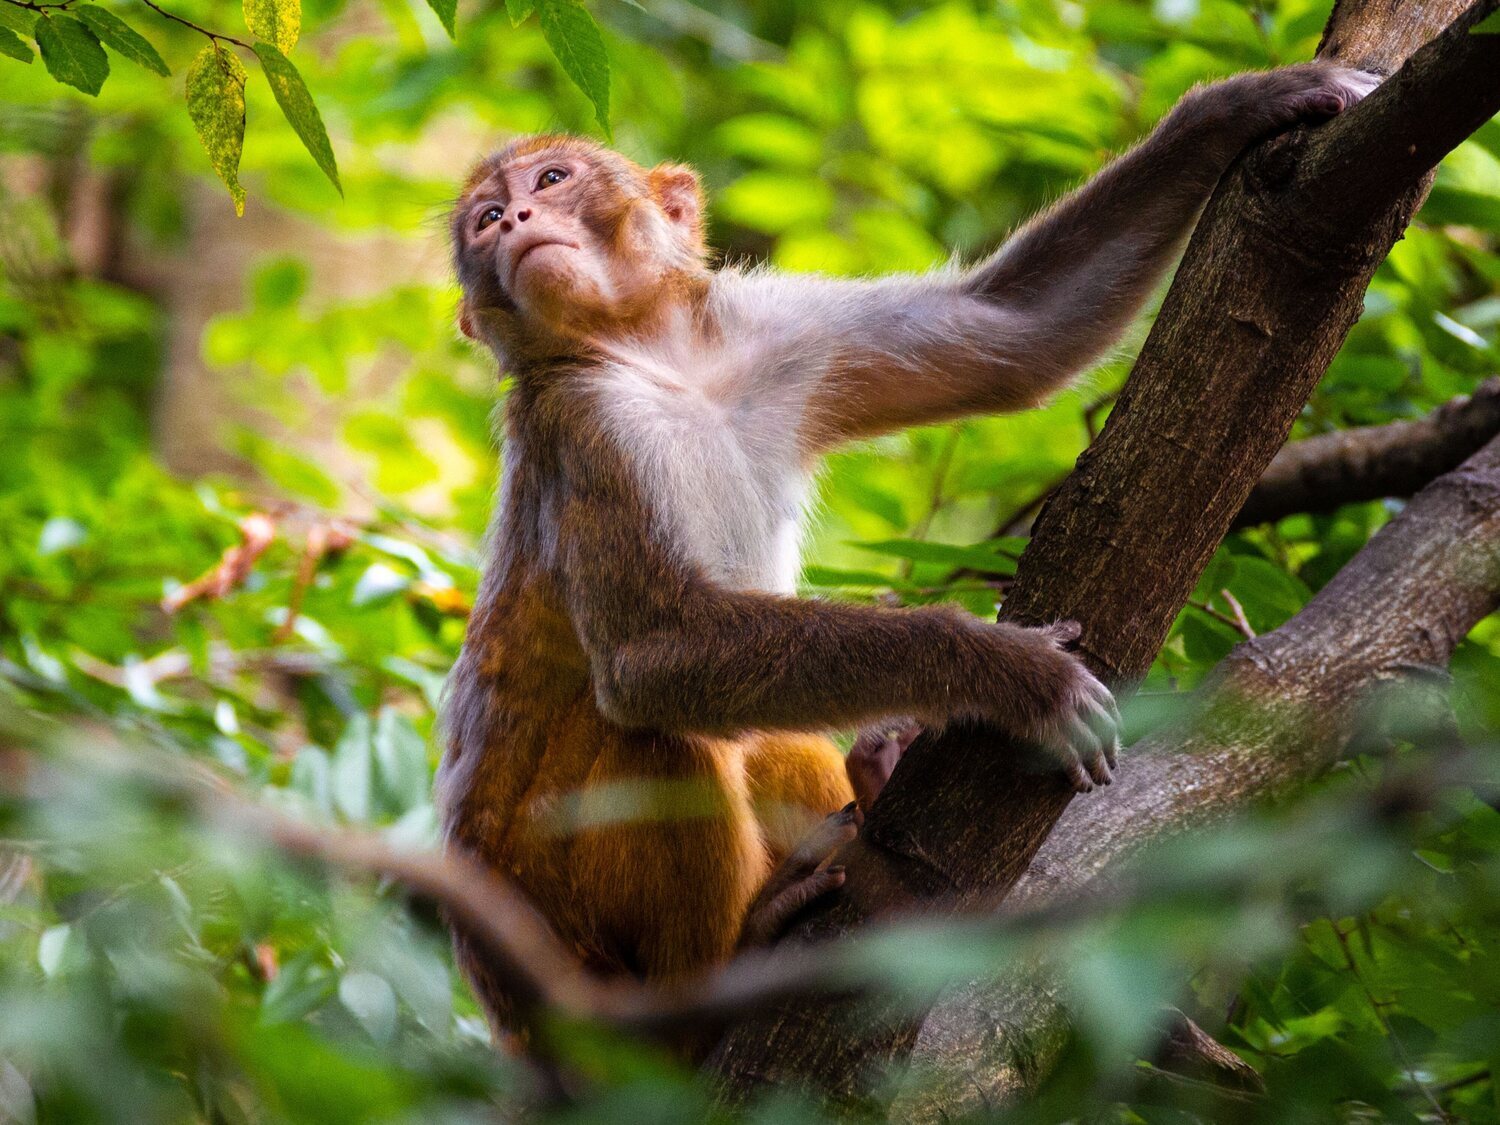 El comportamiento homosexual entre macacos es hereditario y está muy extendido, según un estudio